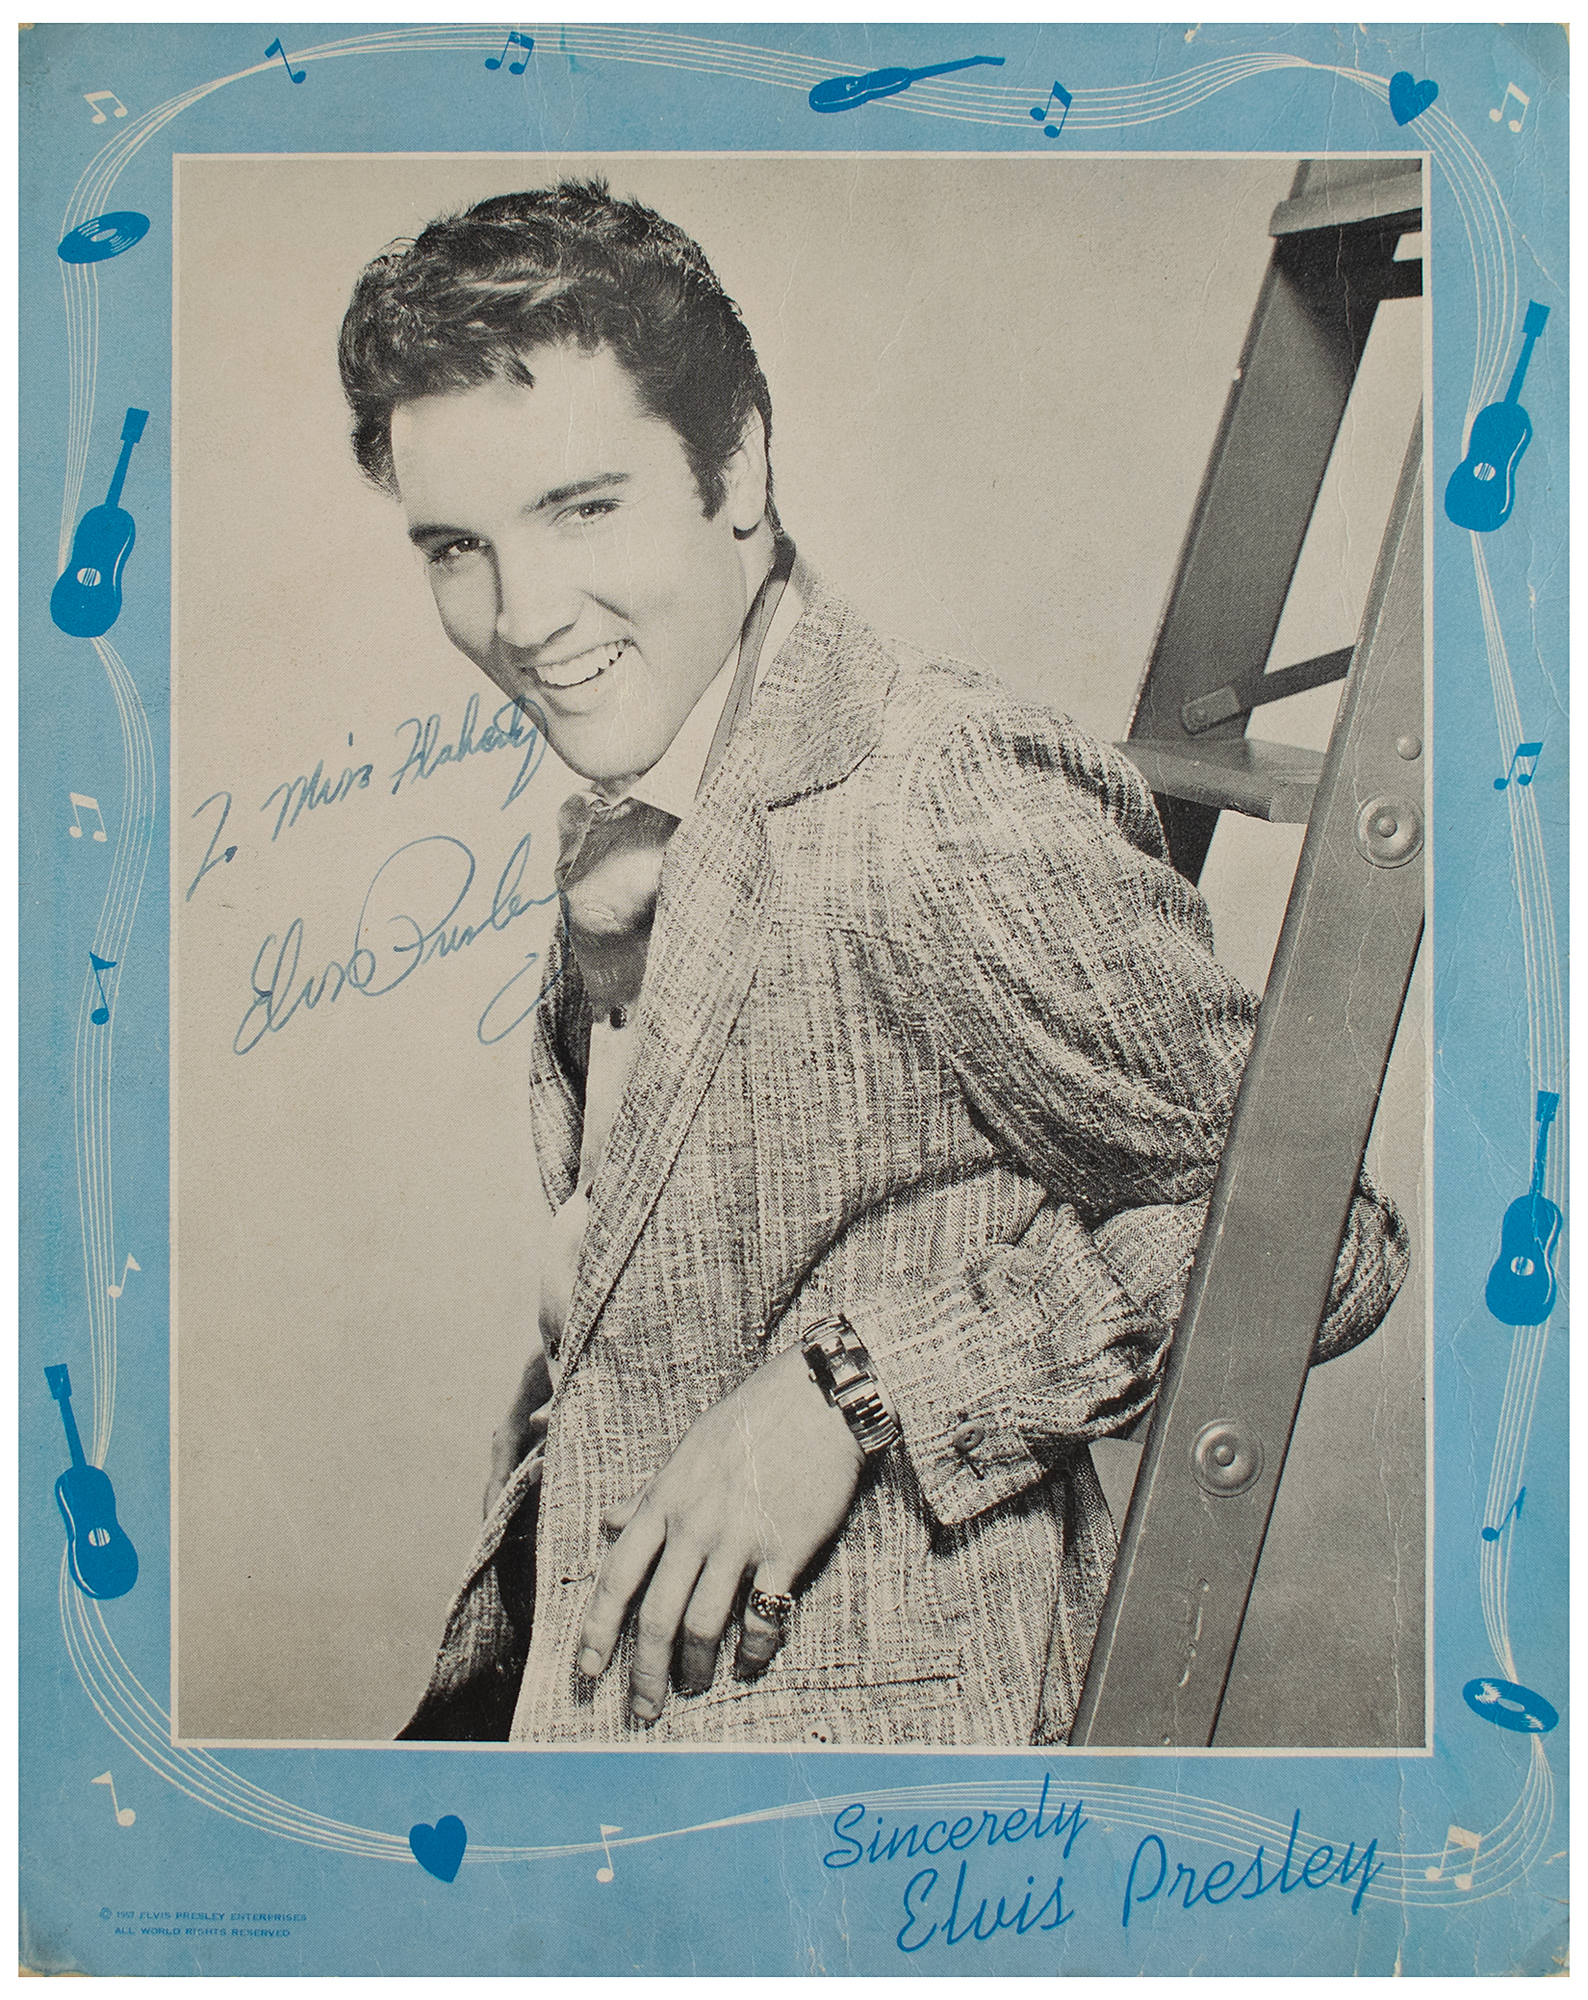 Lot #621 Elvis Presley Signed Program Cover